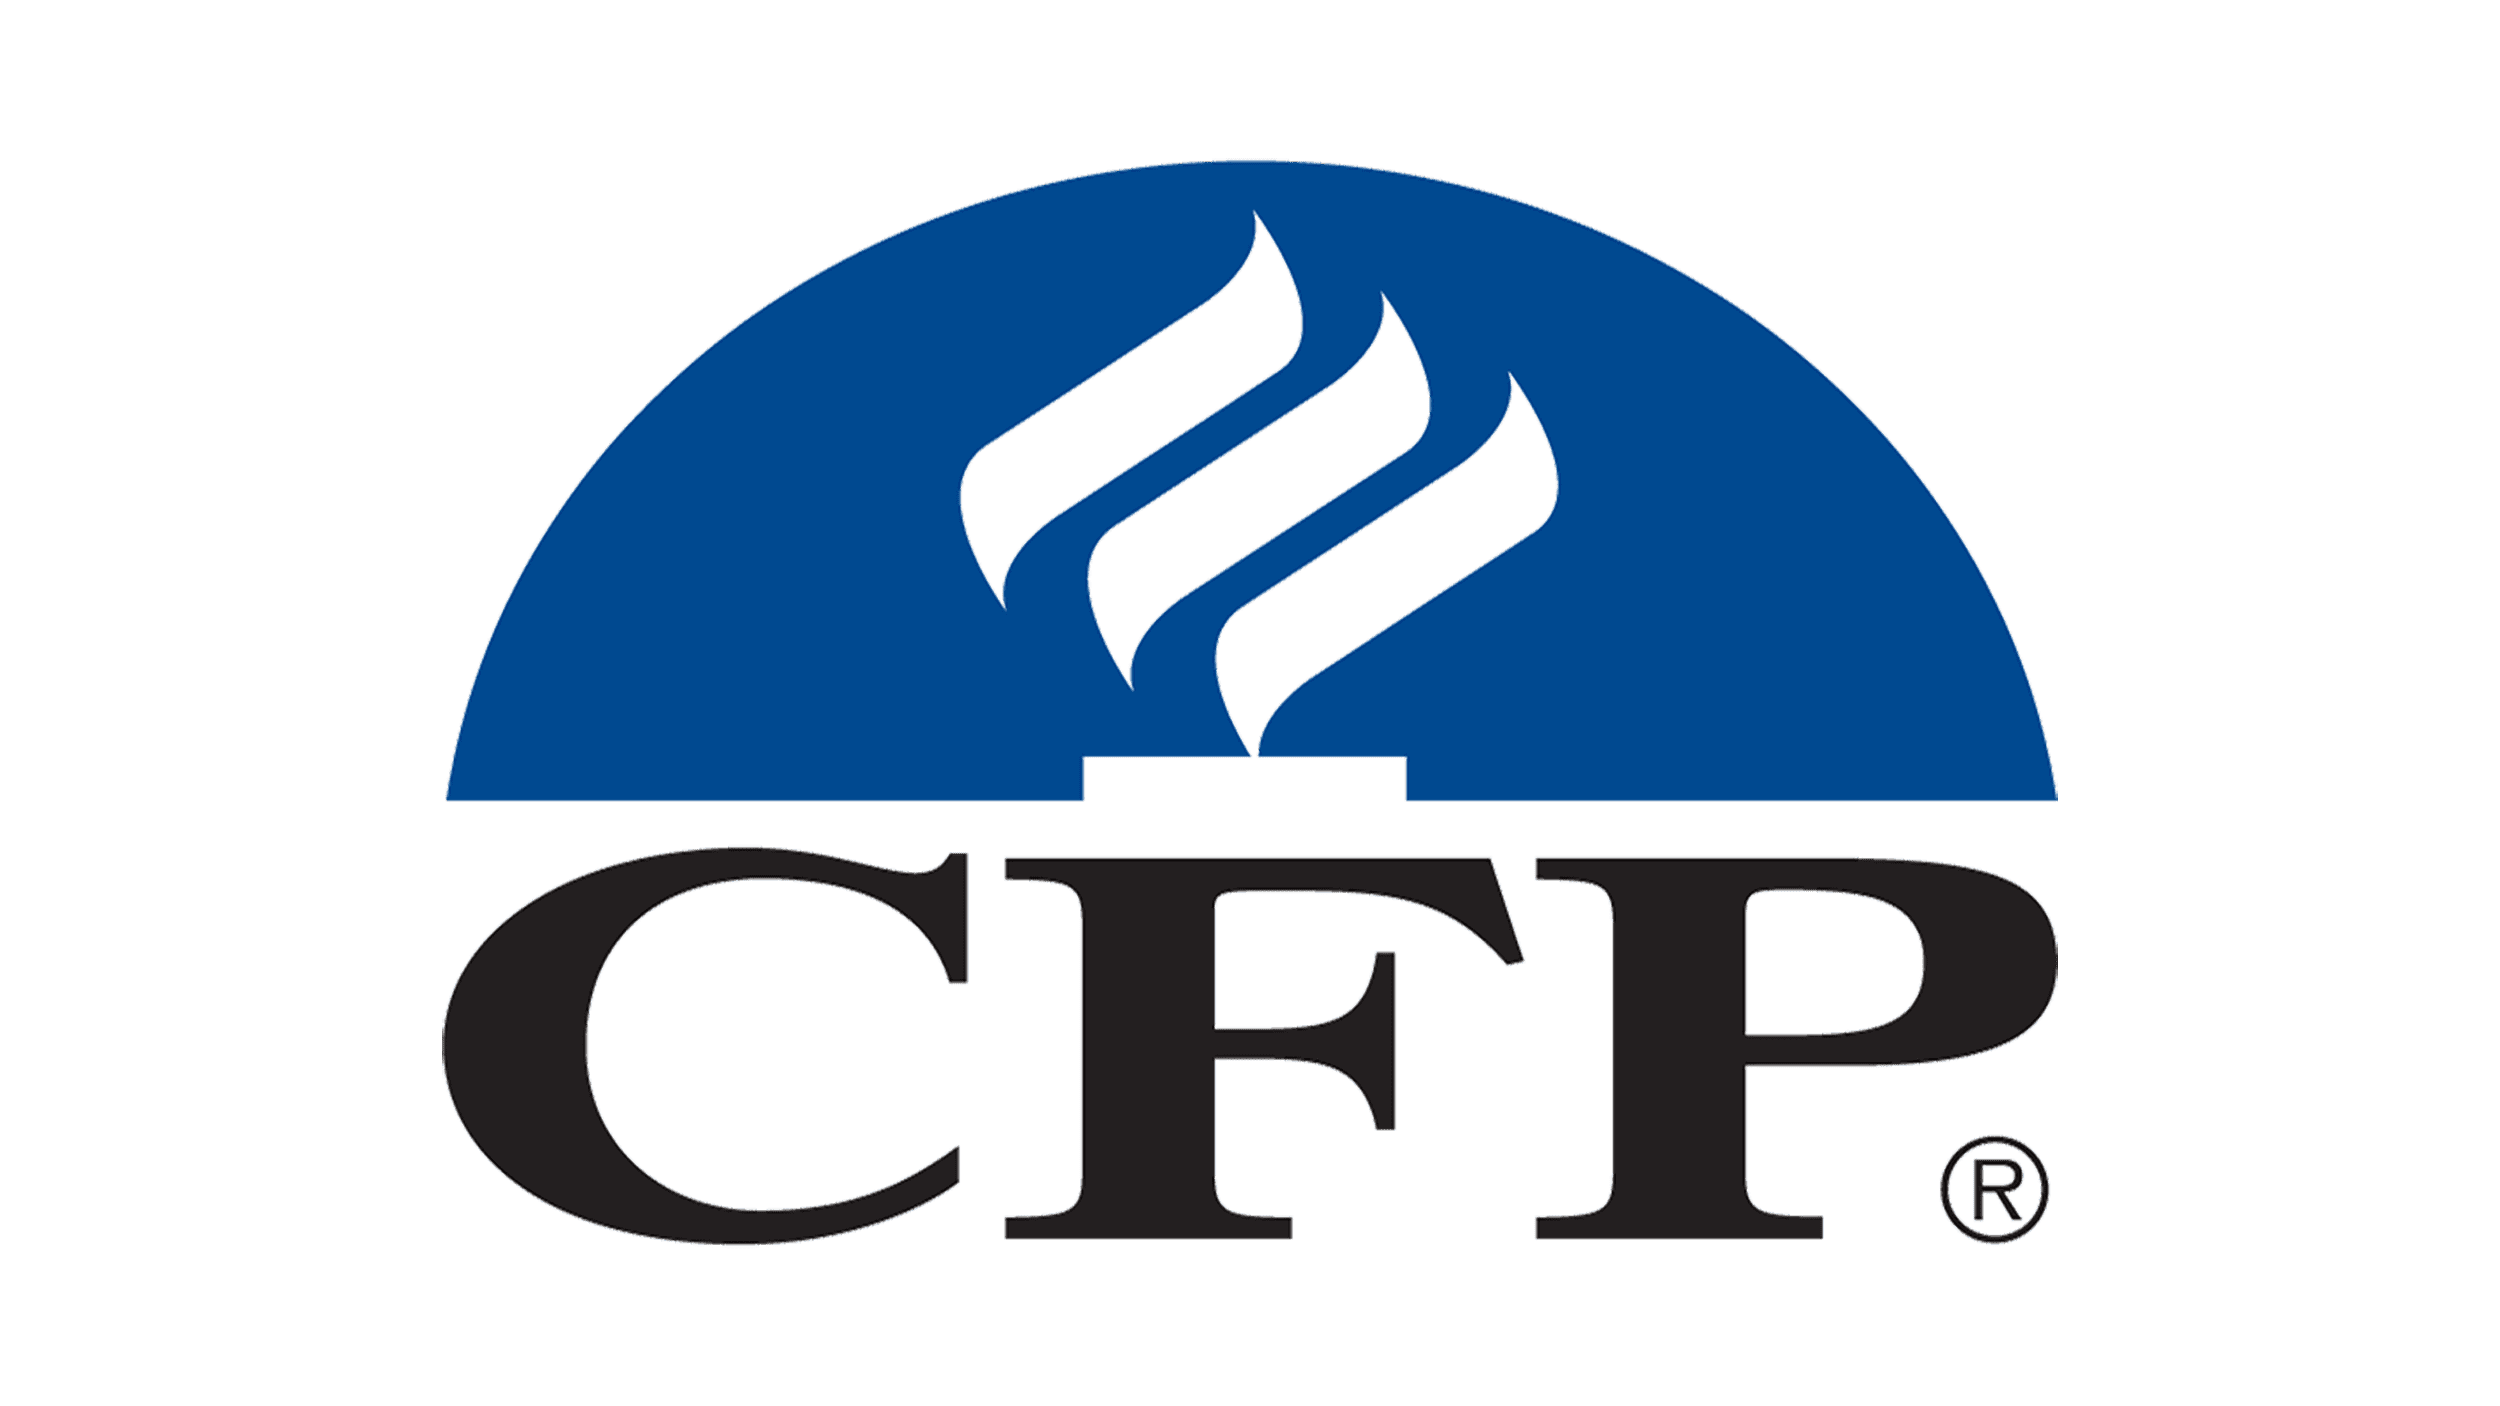 Certified Financial Planner Logo